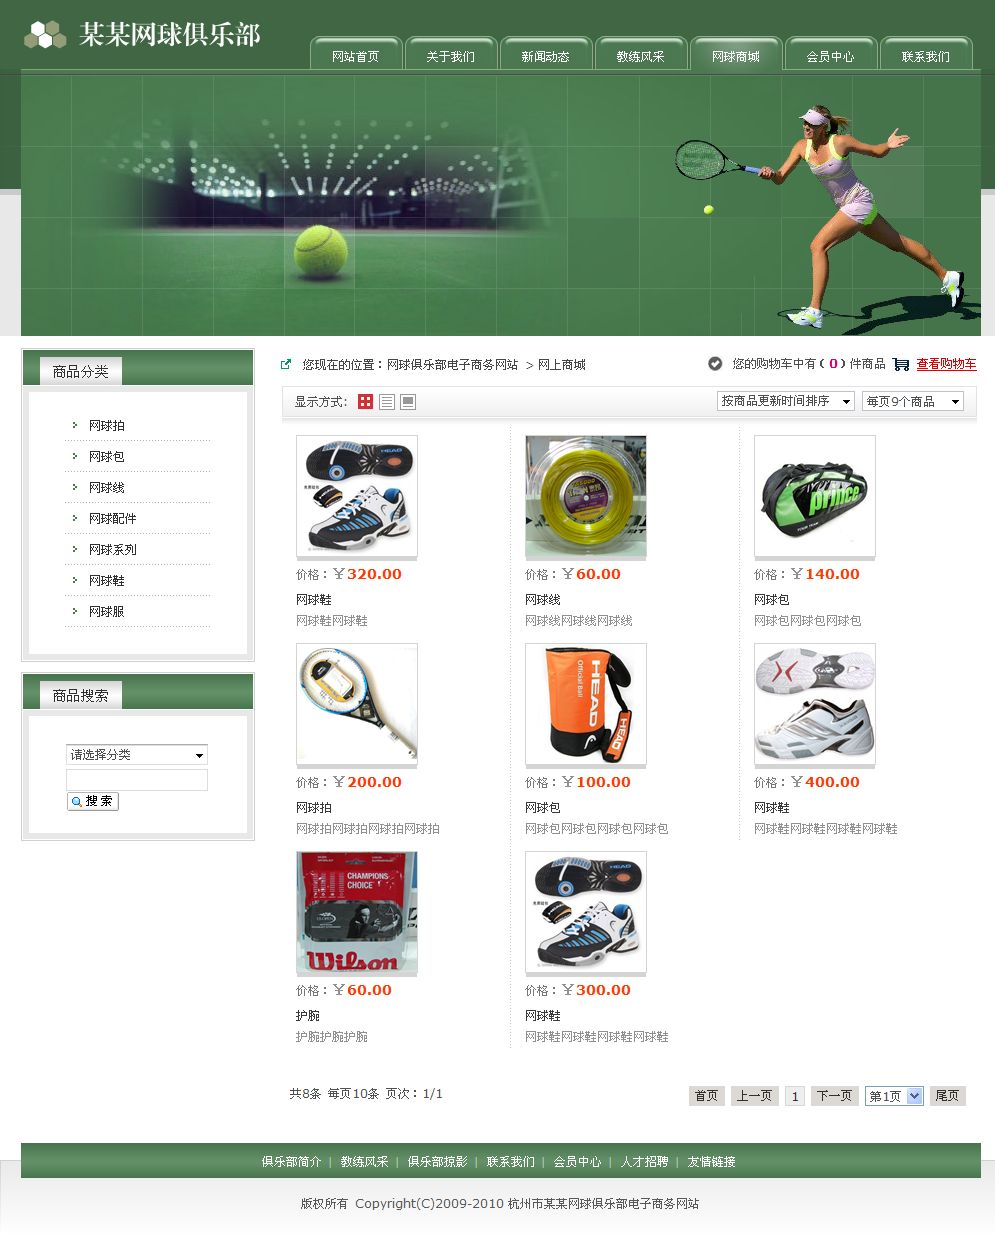 网球俱乐部电子商务网站产品列表页